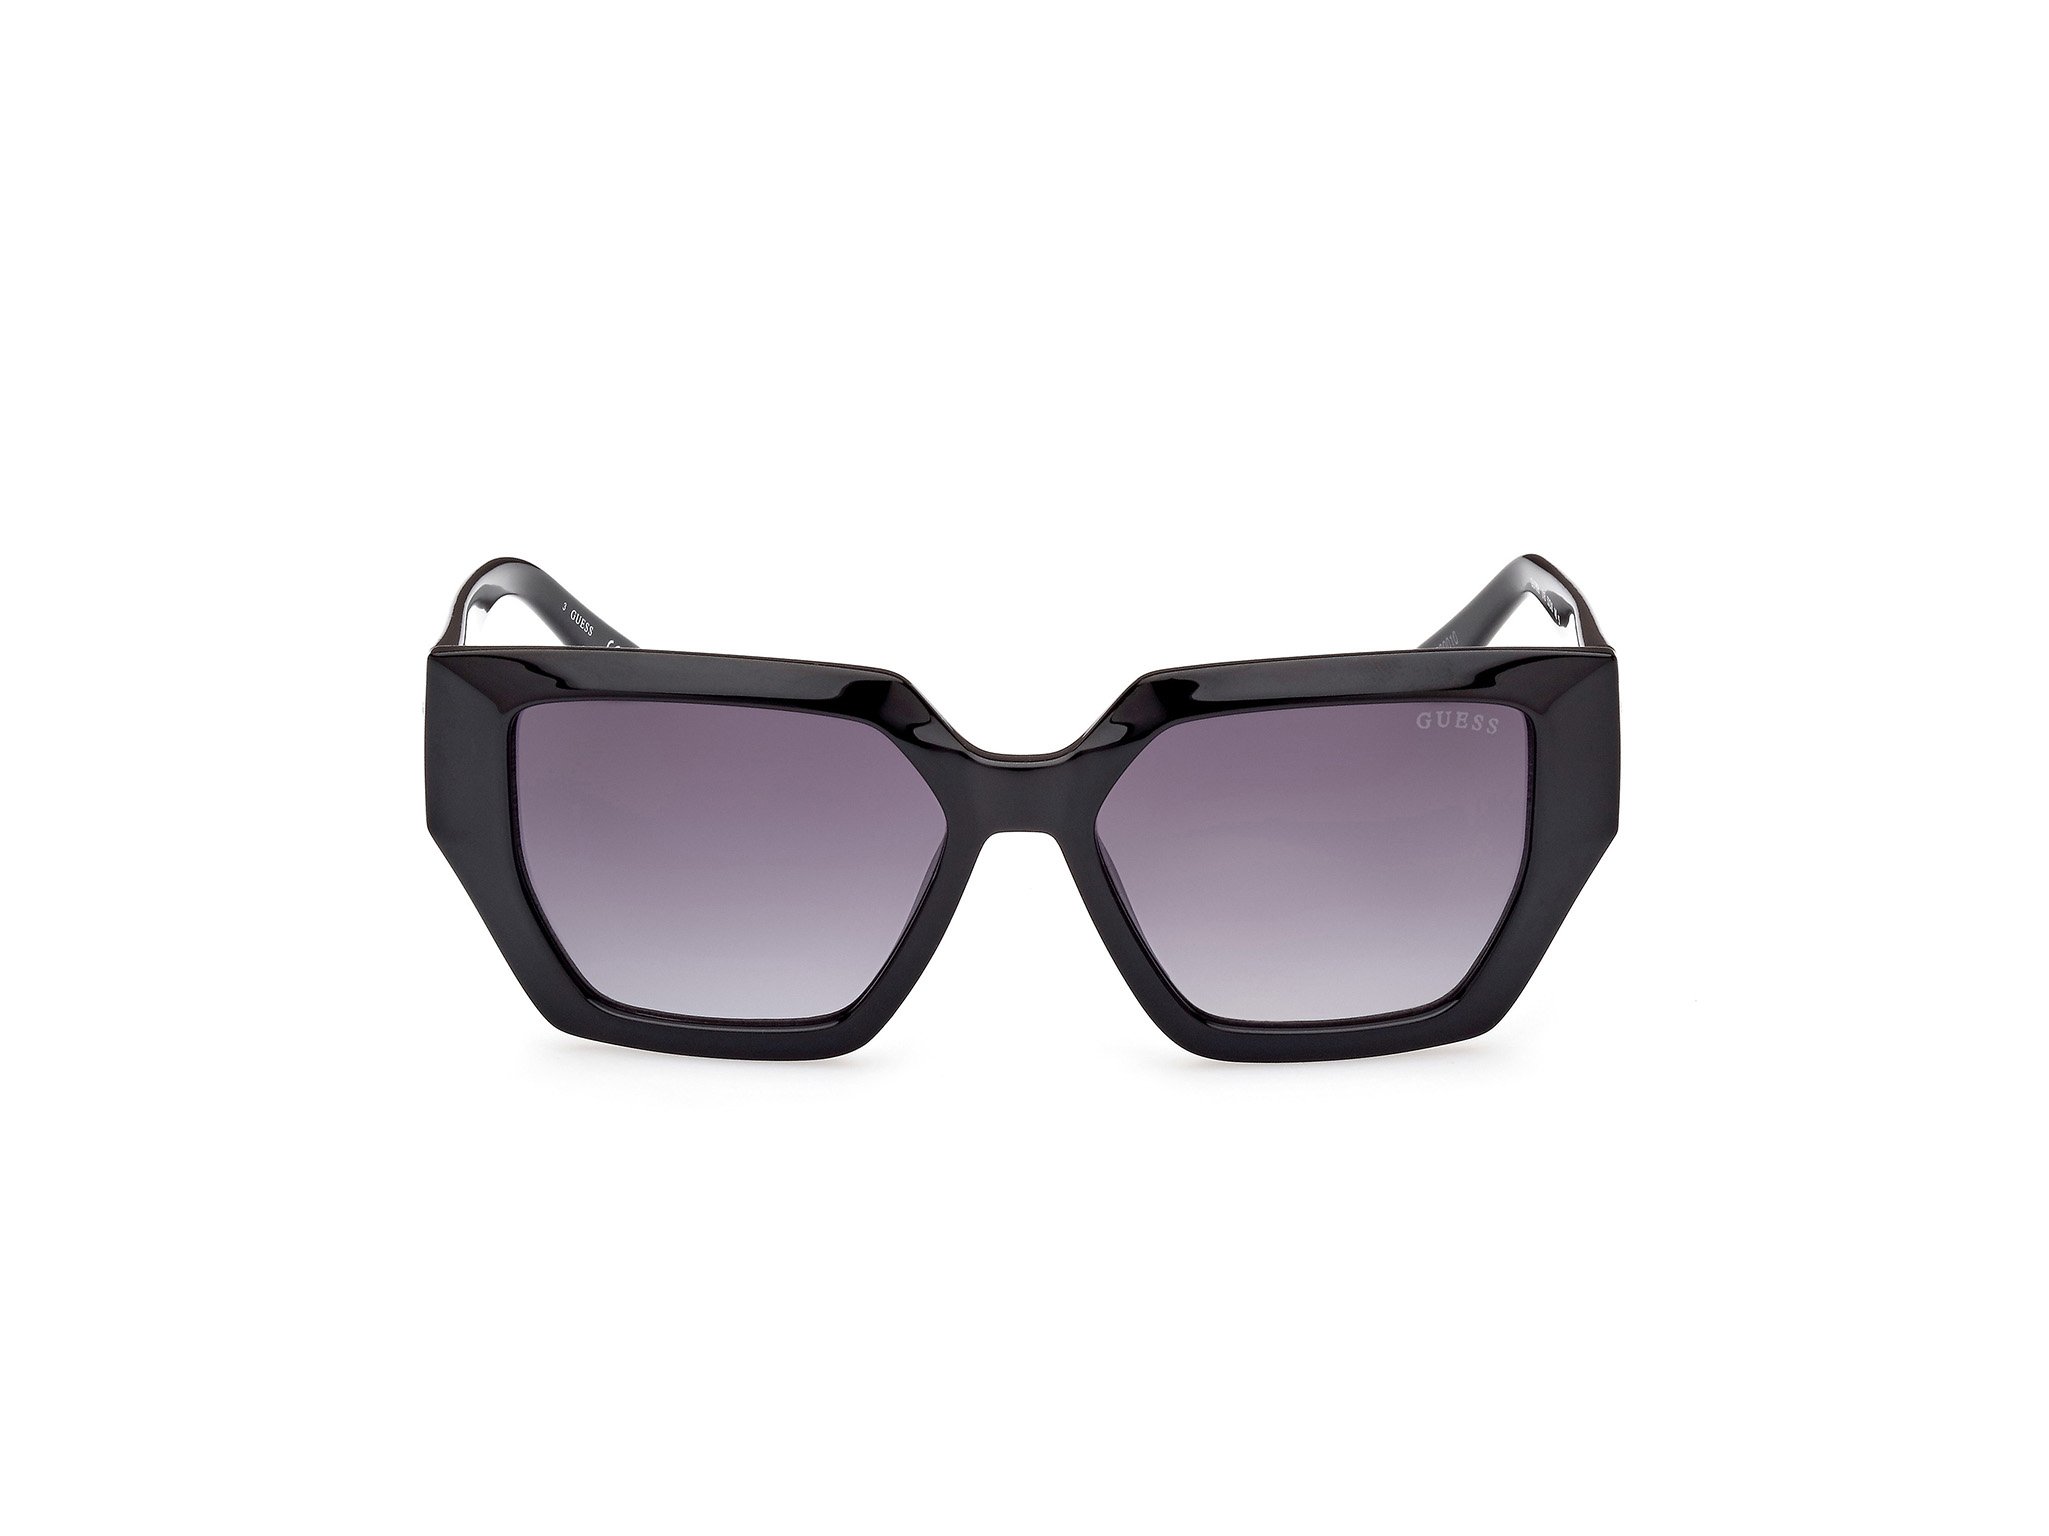 Das Bild zeigt die Sonnenbrille GU7896 01B von der Marke Guess in schwarz.